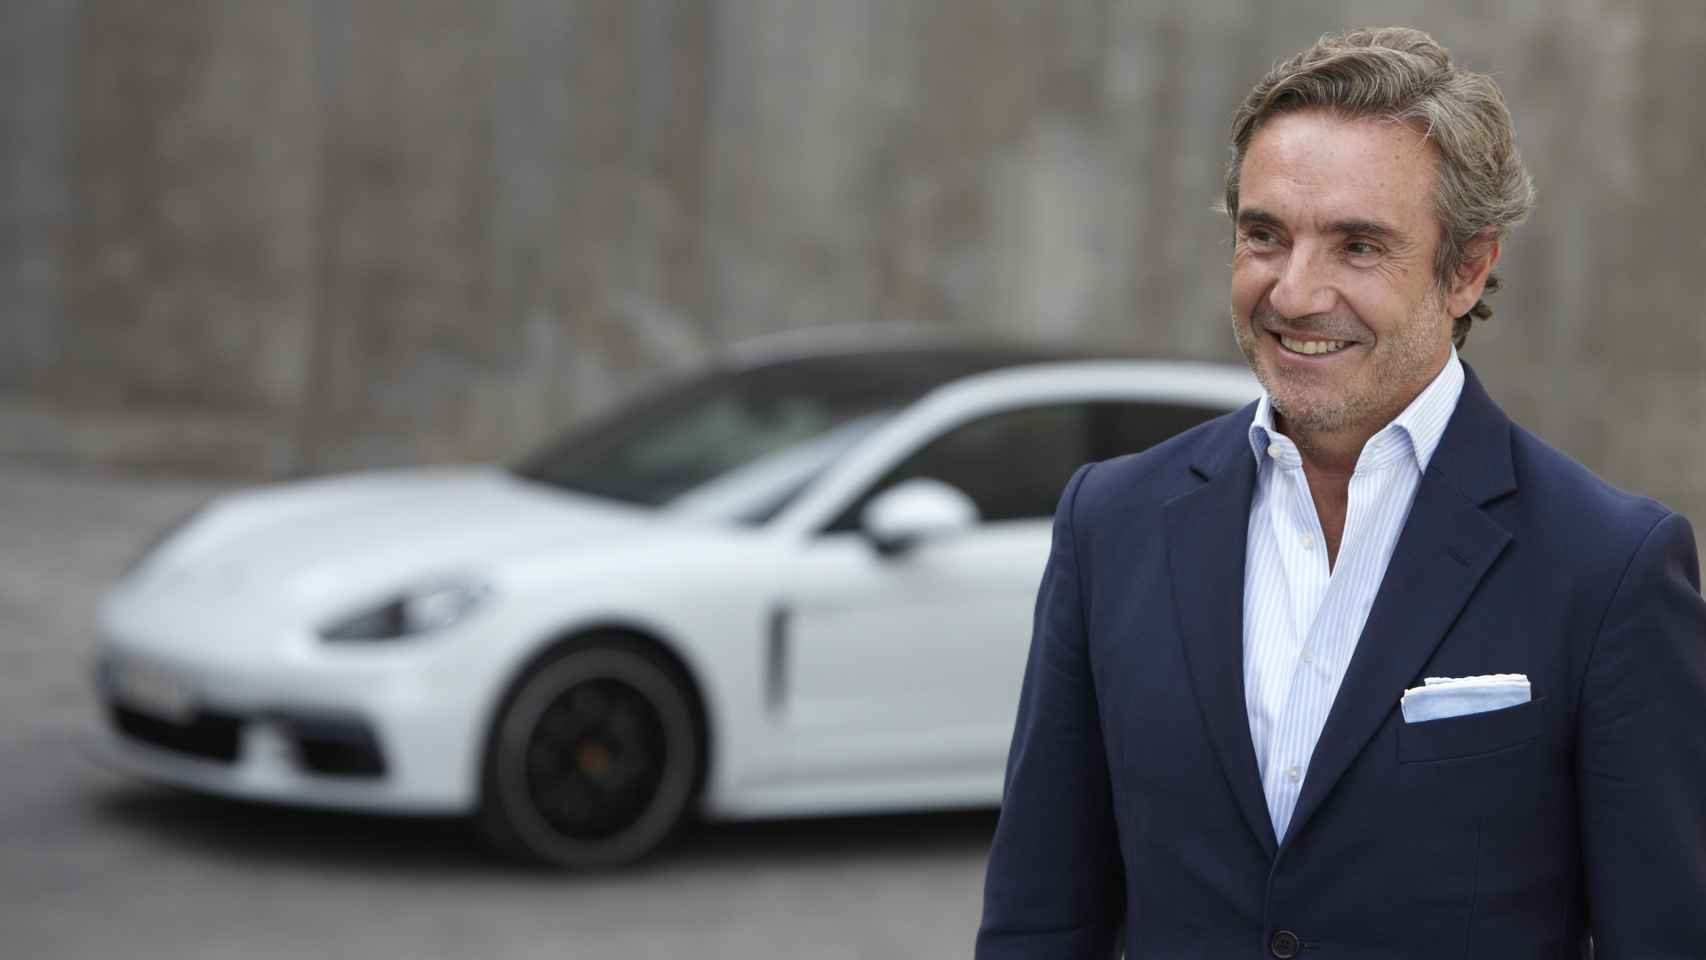 Tomás Villén, antes de Porsche, ha pasado por PSA (Peugeot), Land Rover, BMW y Seat, donde llegó a ser director general.